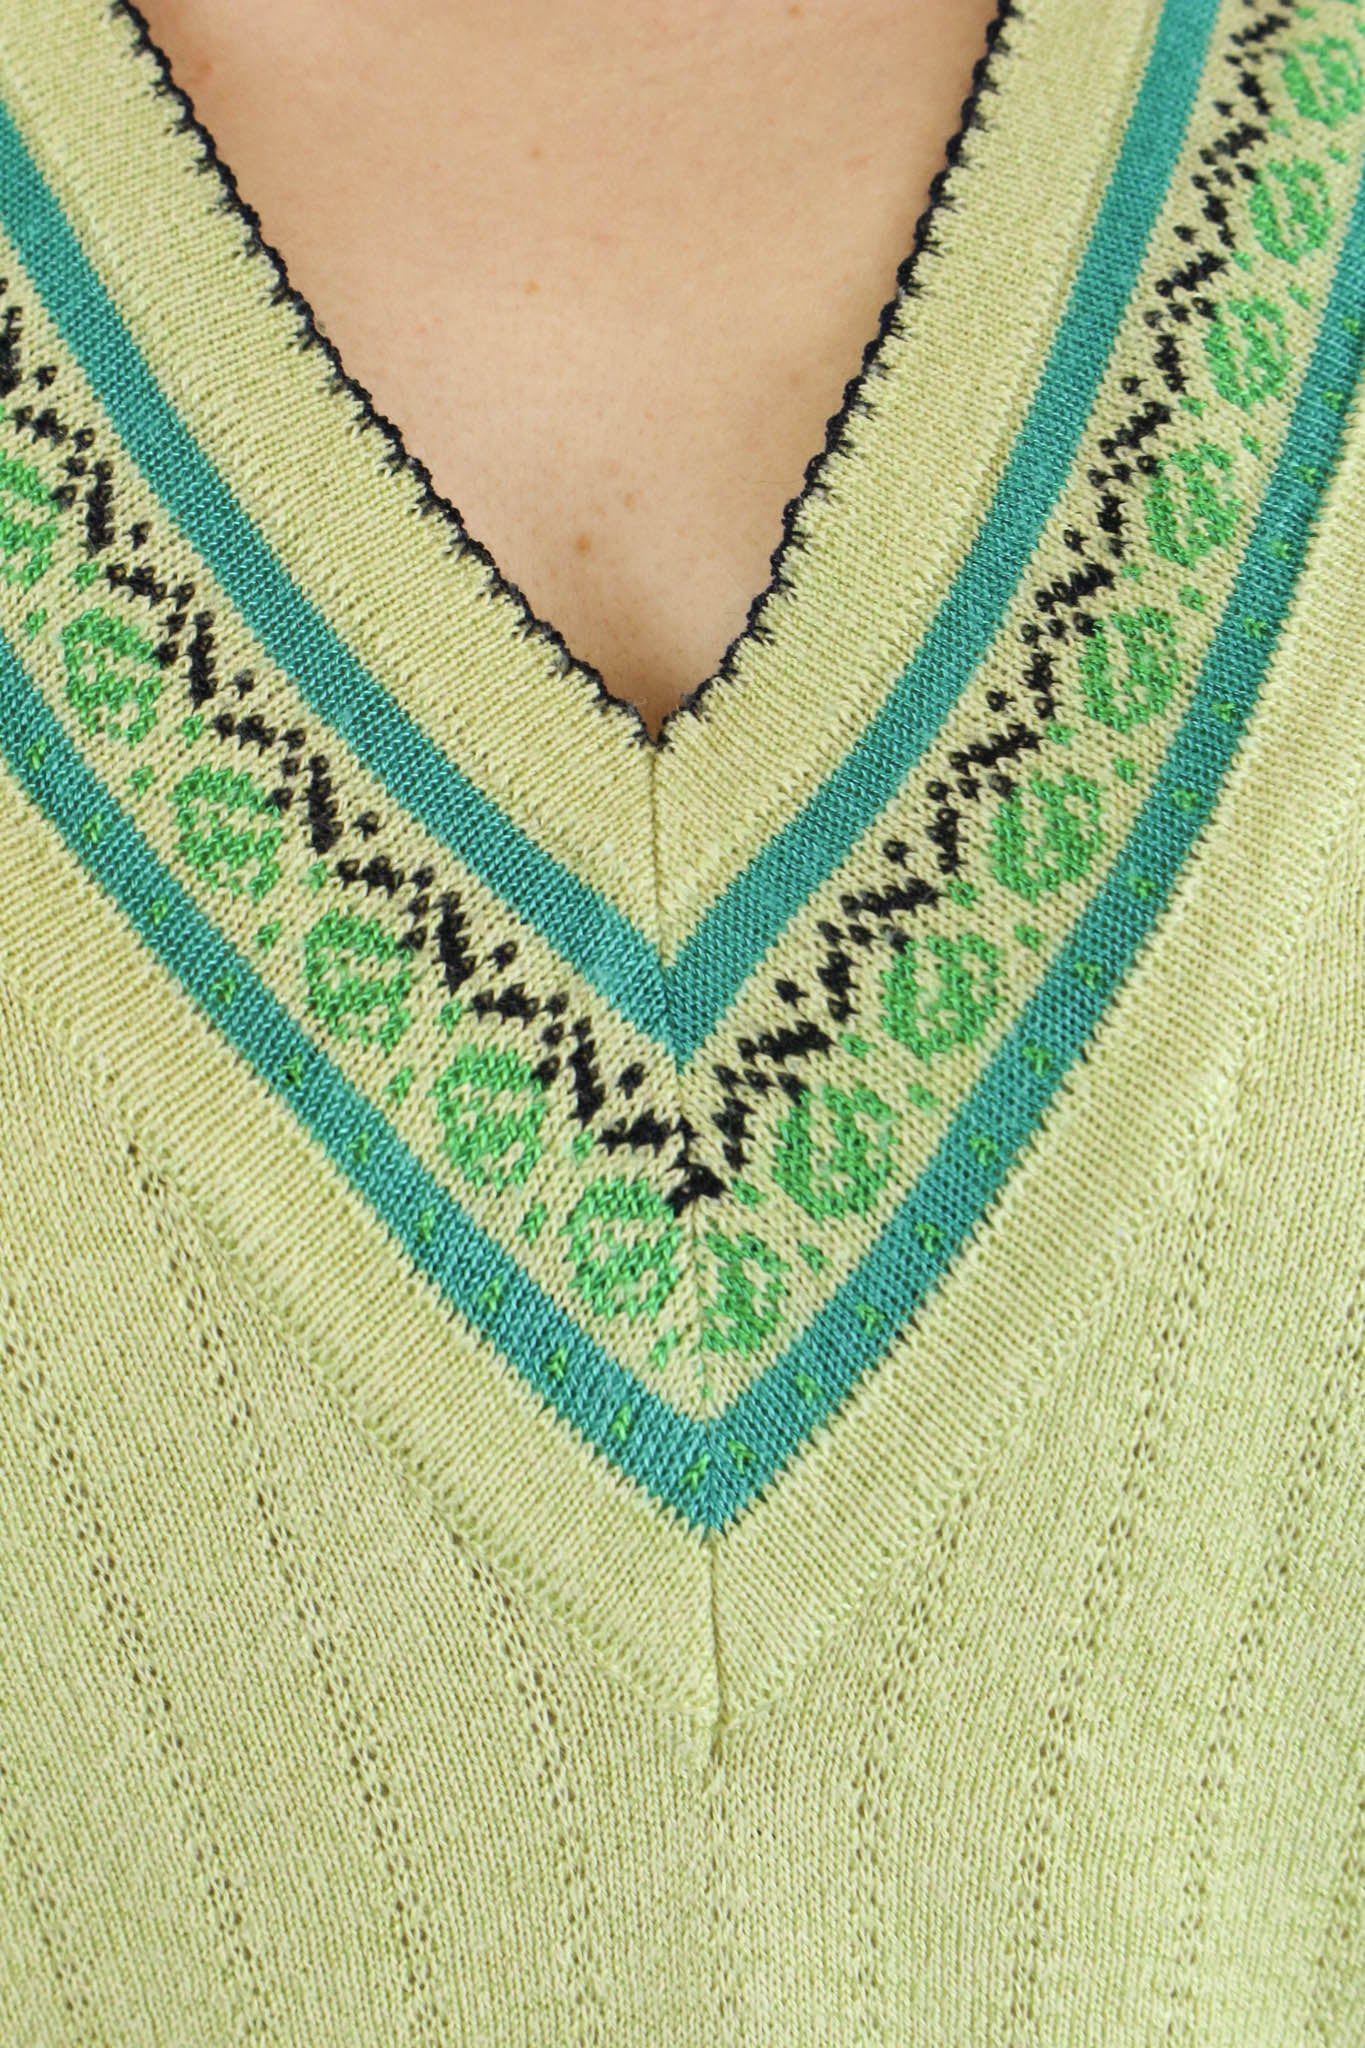 Vintage knitwear